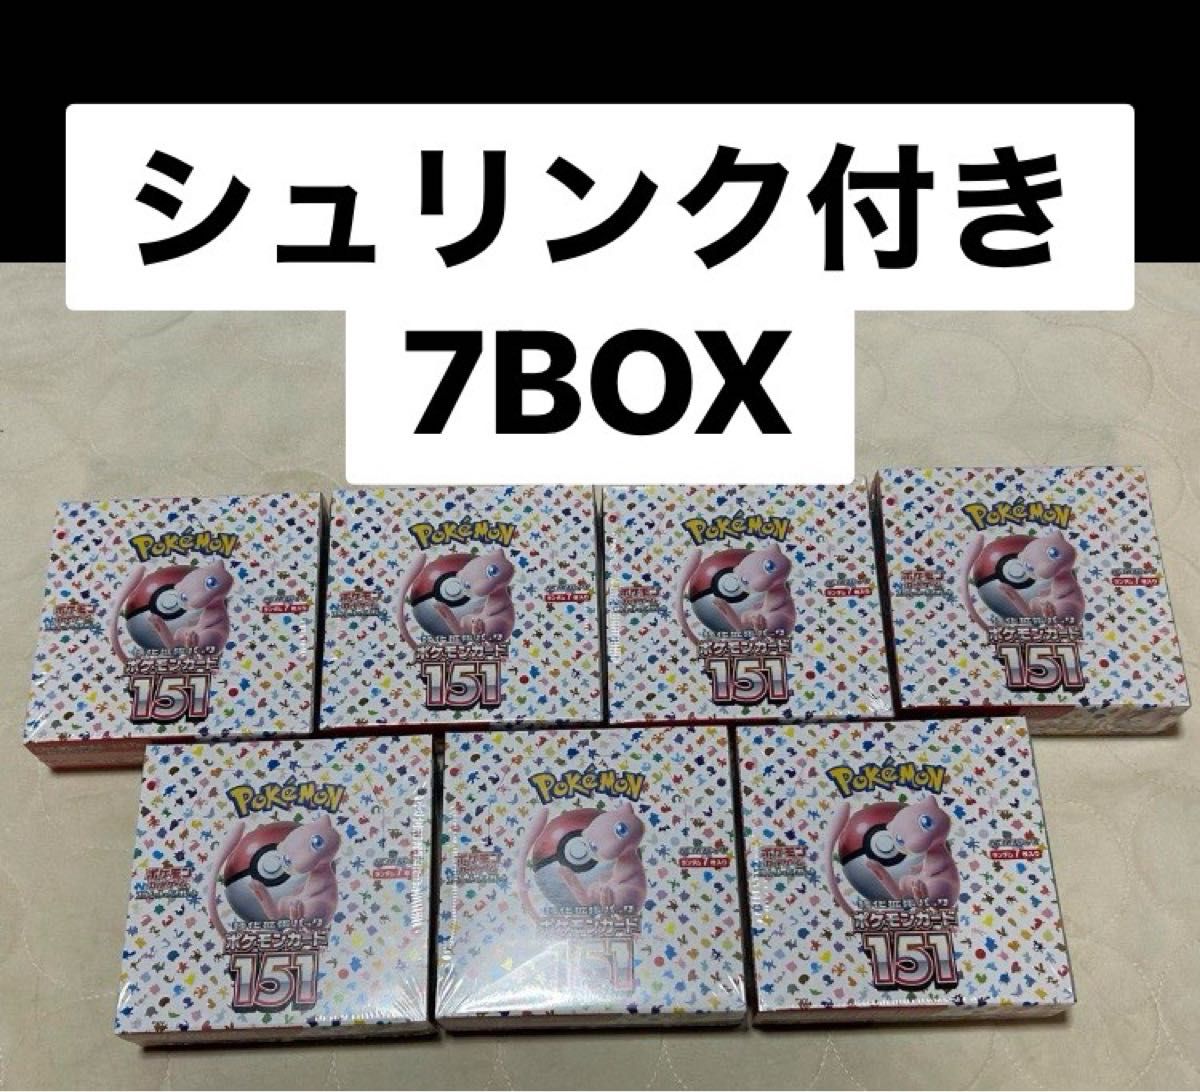 ポケモンカード151 7BOX セット シュリンク付き 新品未開封 7箱 シュリンク有り 必ず発送